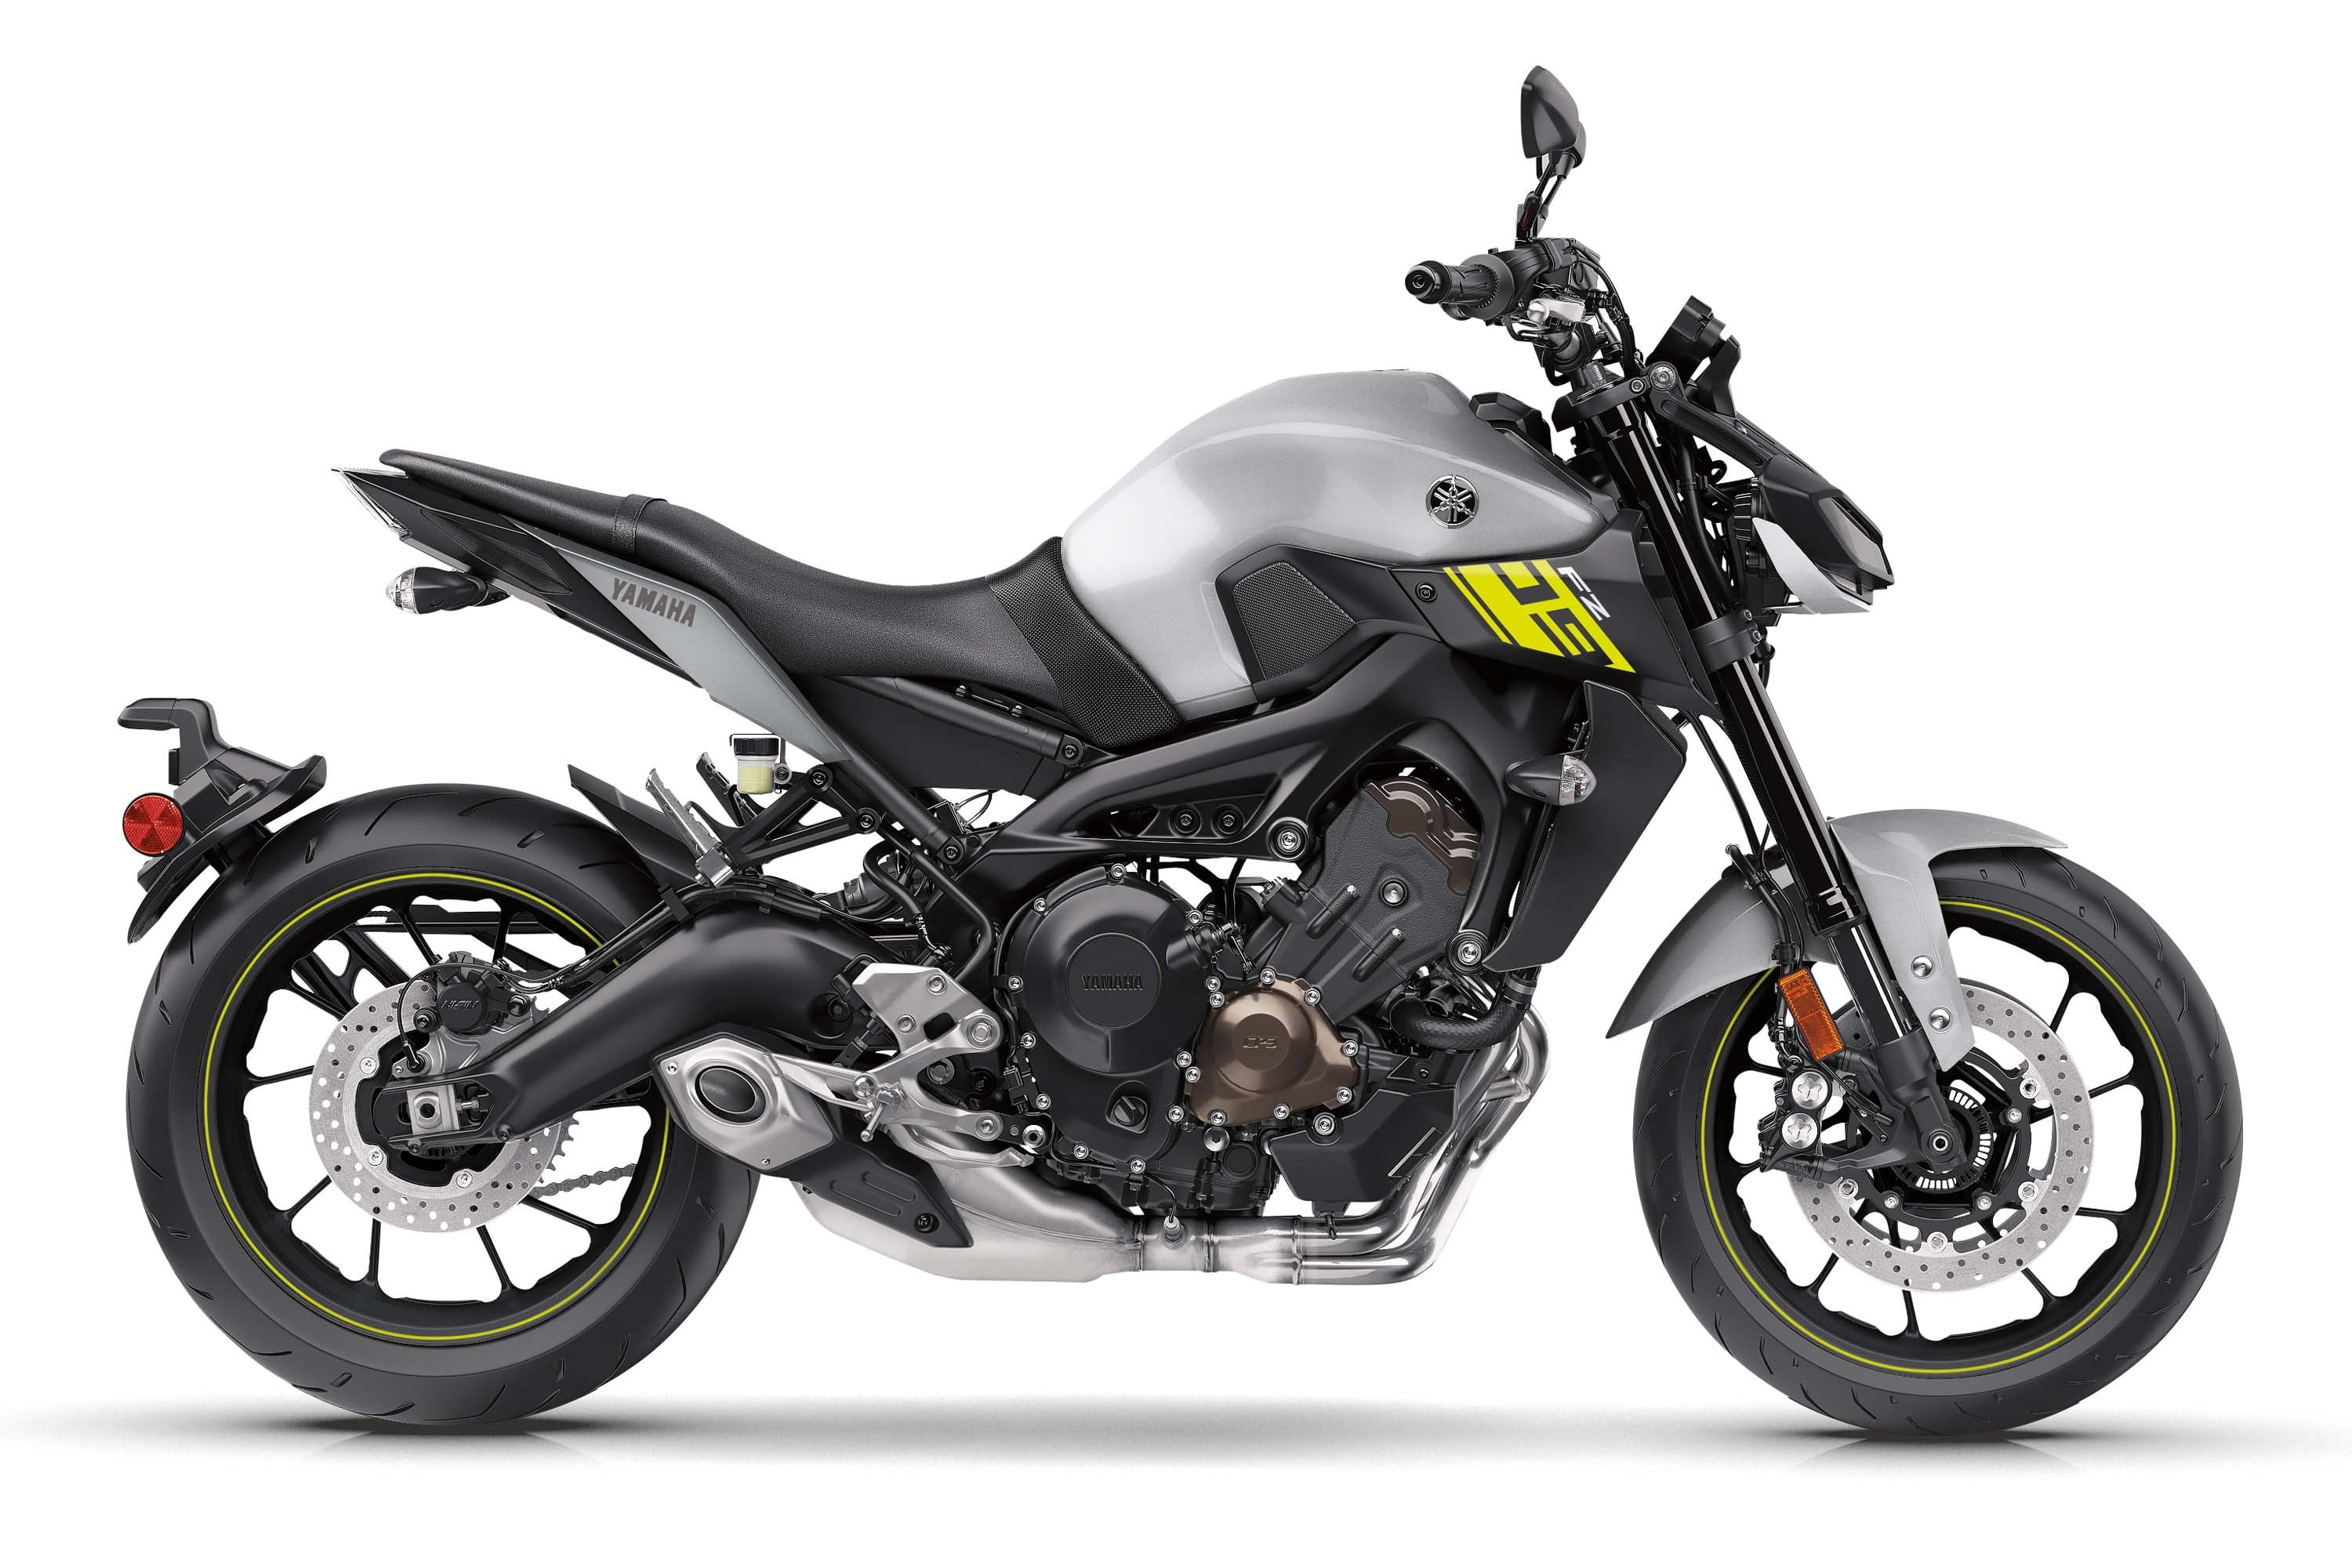 Yamaha FZ-09, 2017, motorcycle, land vehicle, transportation